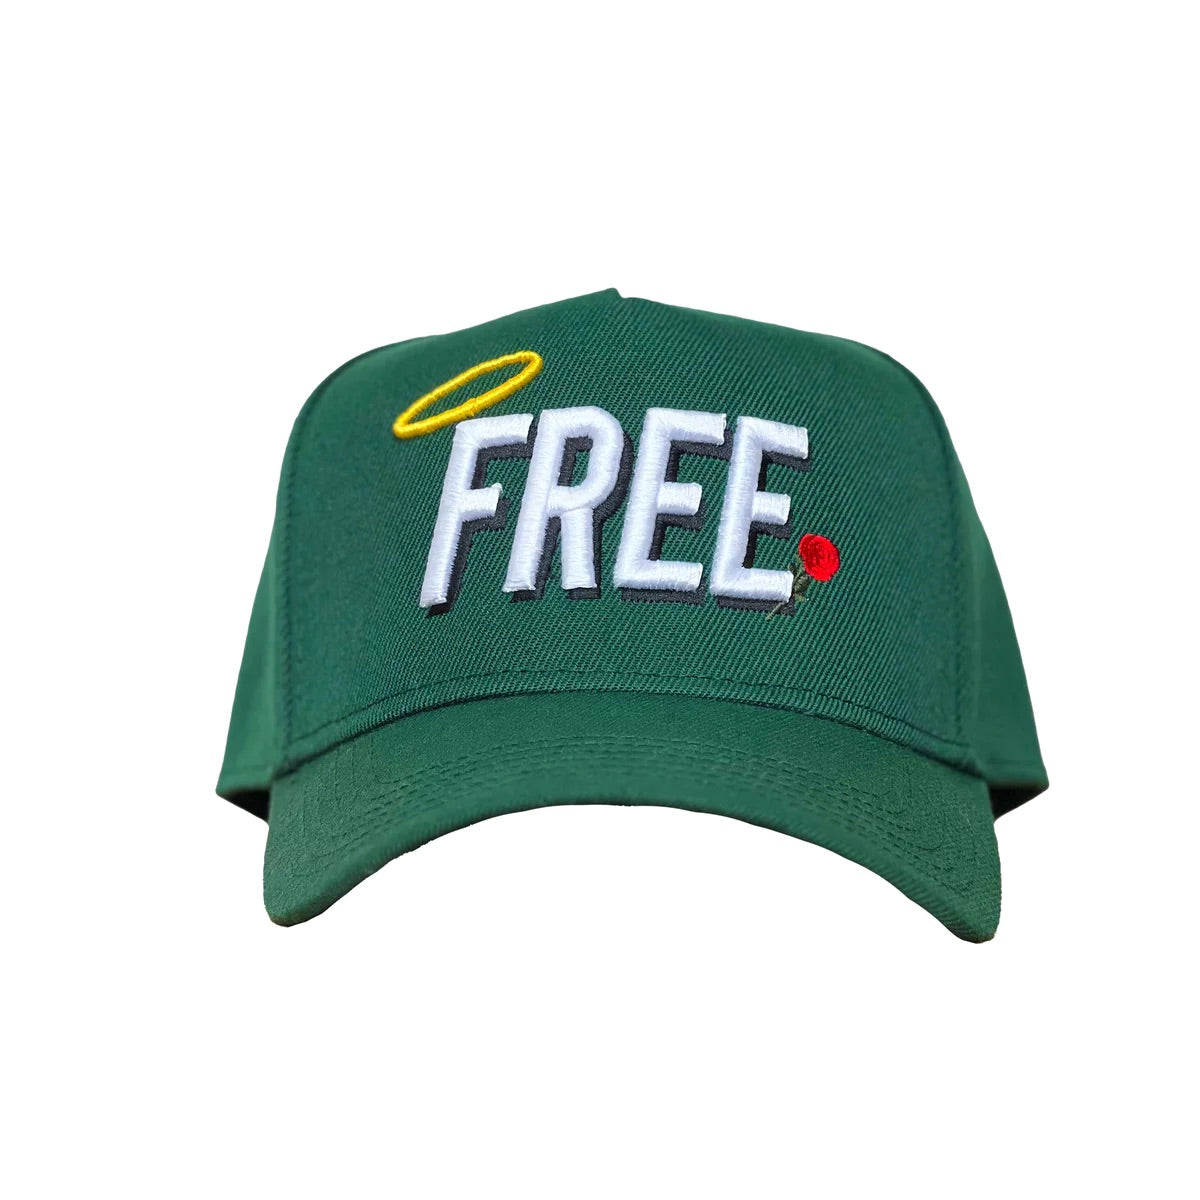 SBSD So "FREE" cap